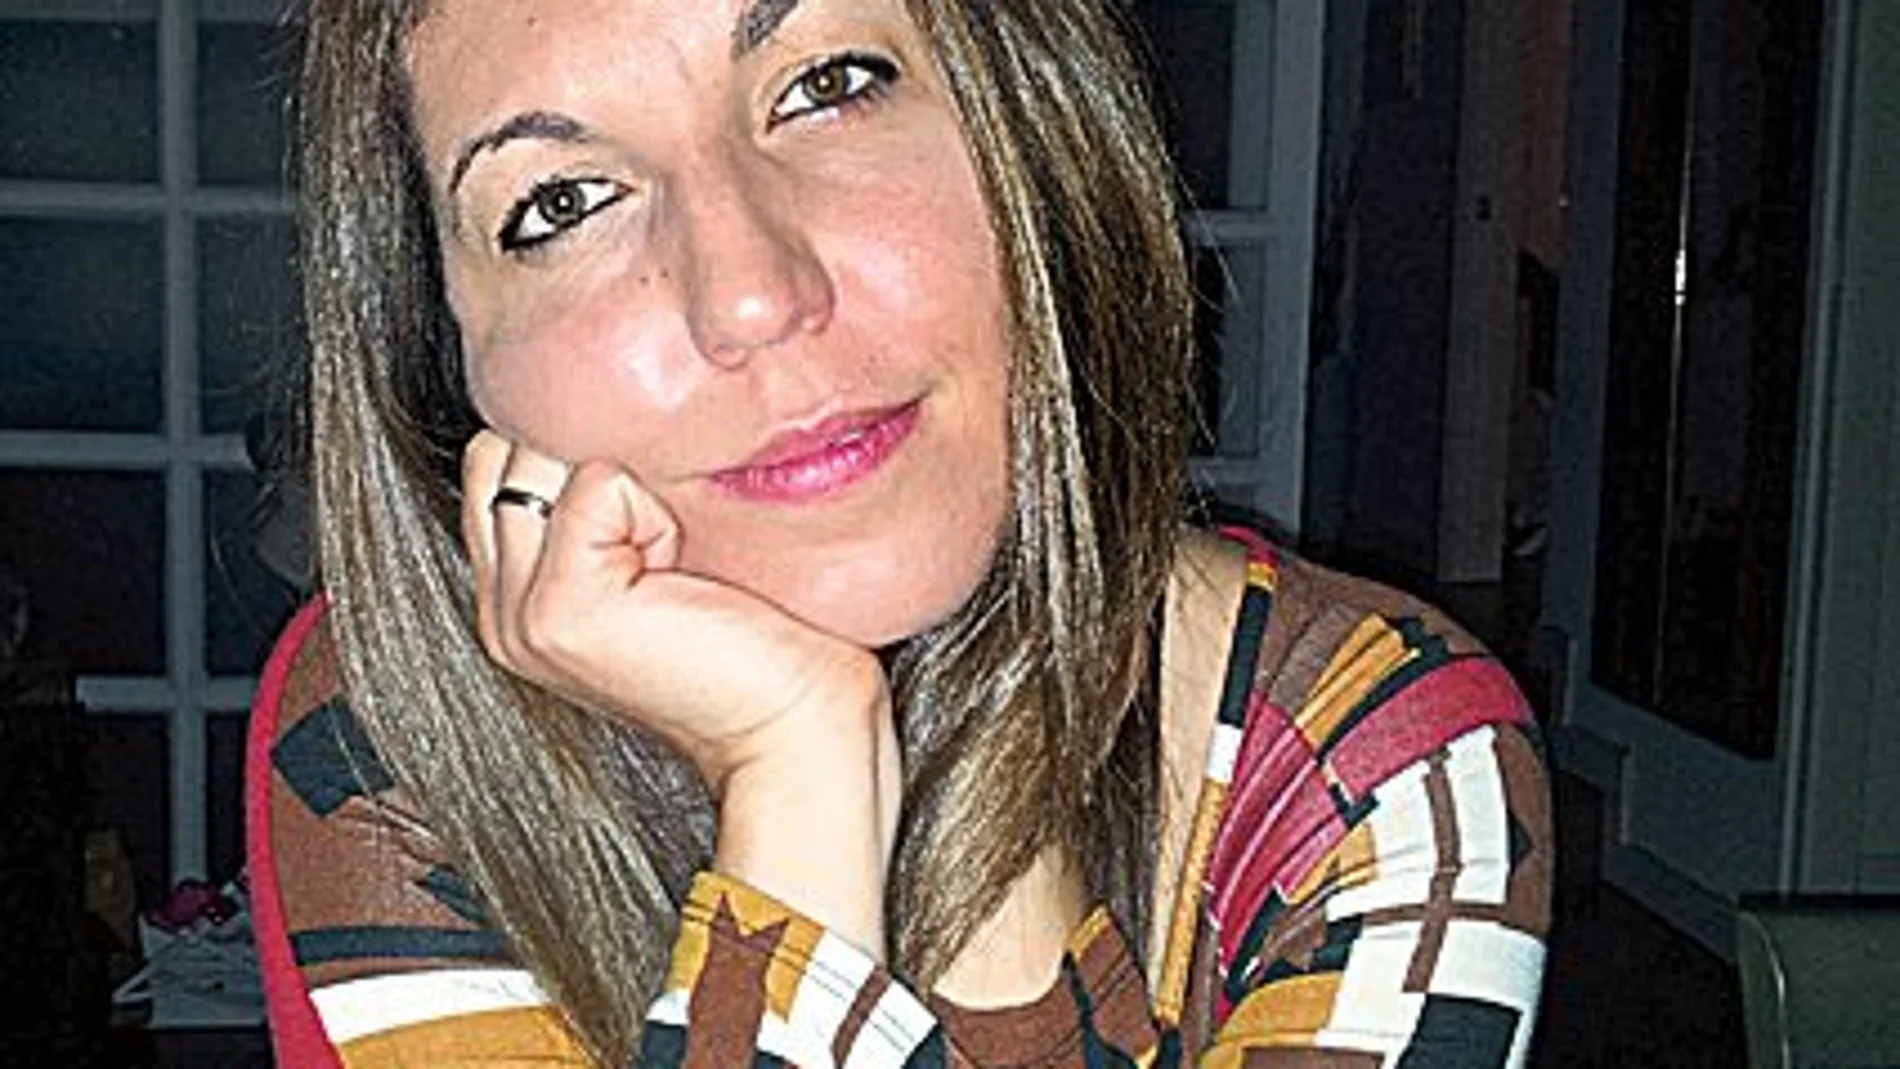 Sara Escudero Núñez/ Psicóloga experta en Trastornos de la Conducta Alimentaria. Directora del Centro de Psicología Sara Escudero